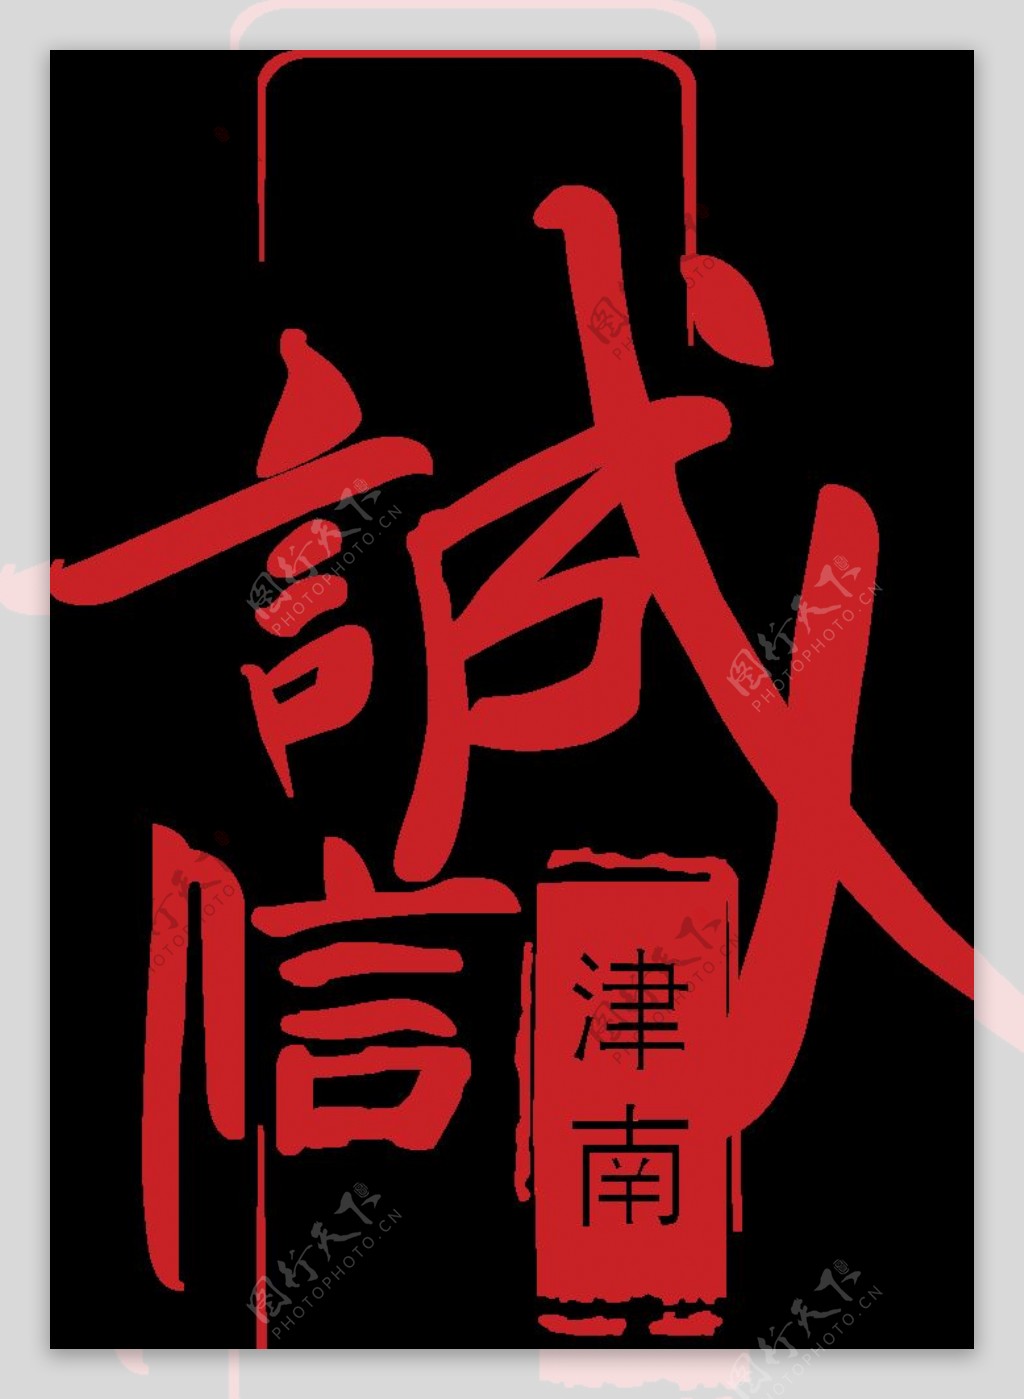 诚信津南logo图片